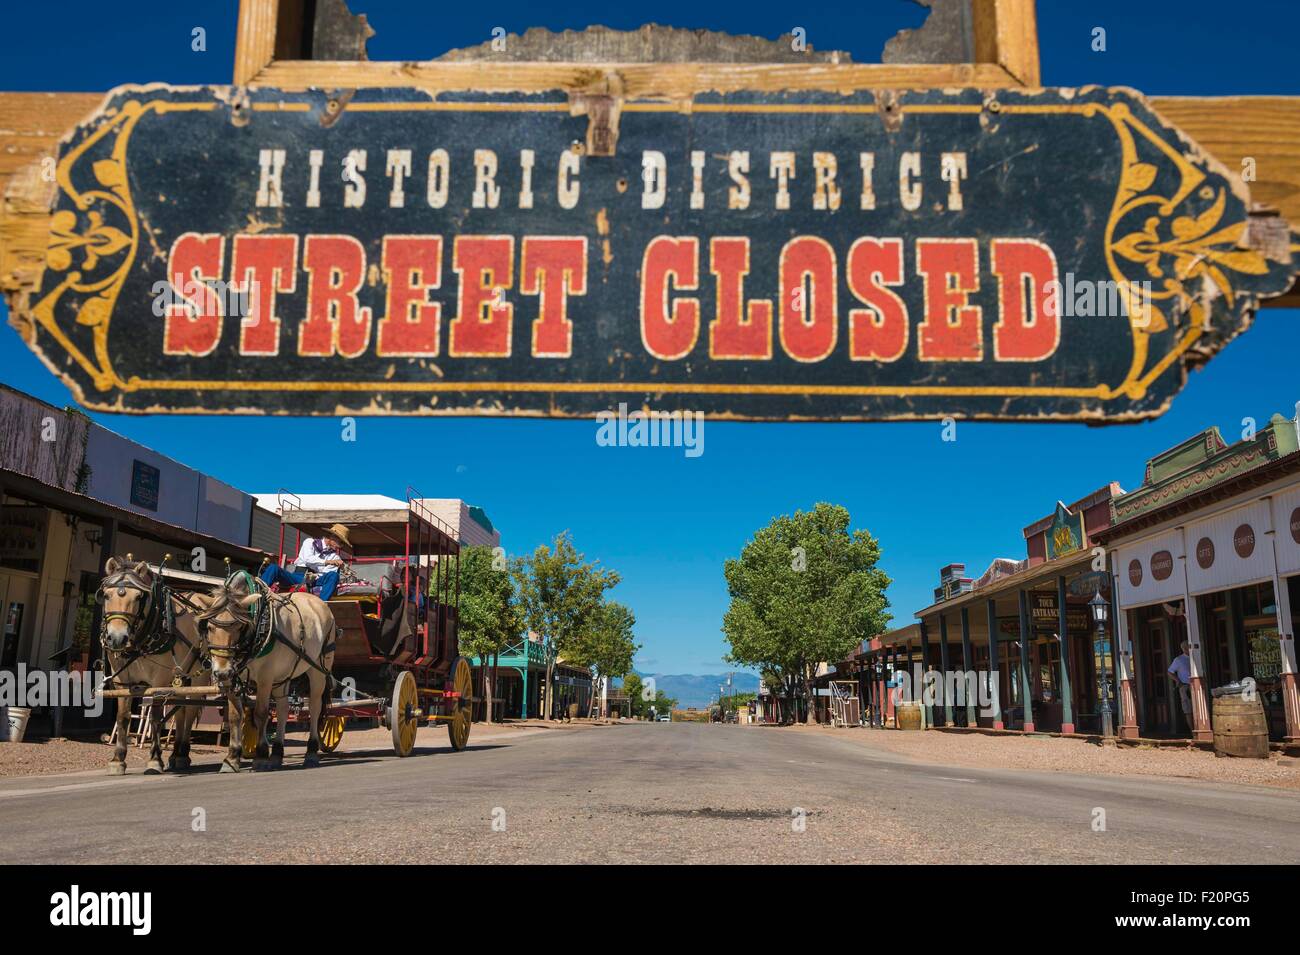 Stati Uniti, Arizona, oggetto contrassegnato per la rimozione definitiva, quartiere storico, ingresso sign Foto Stock